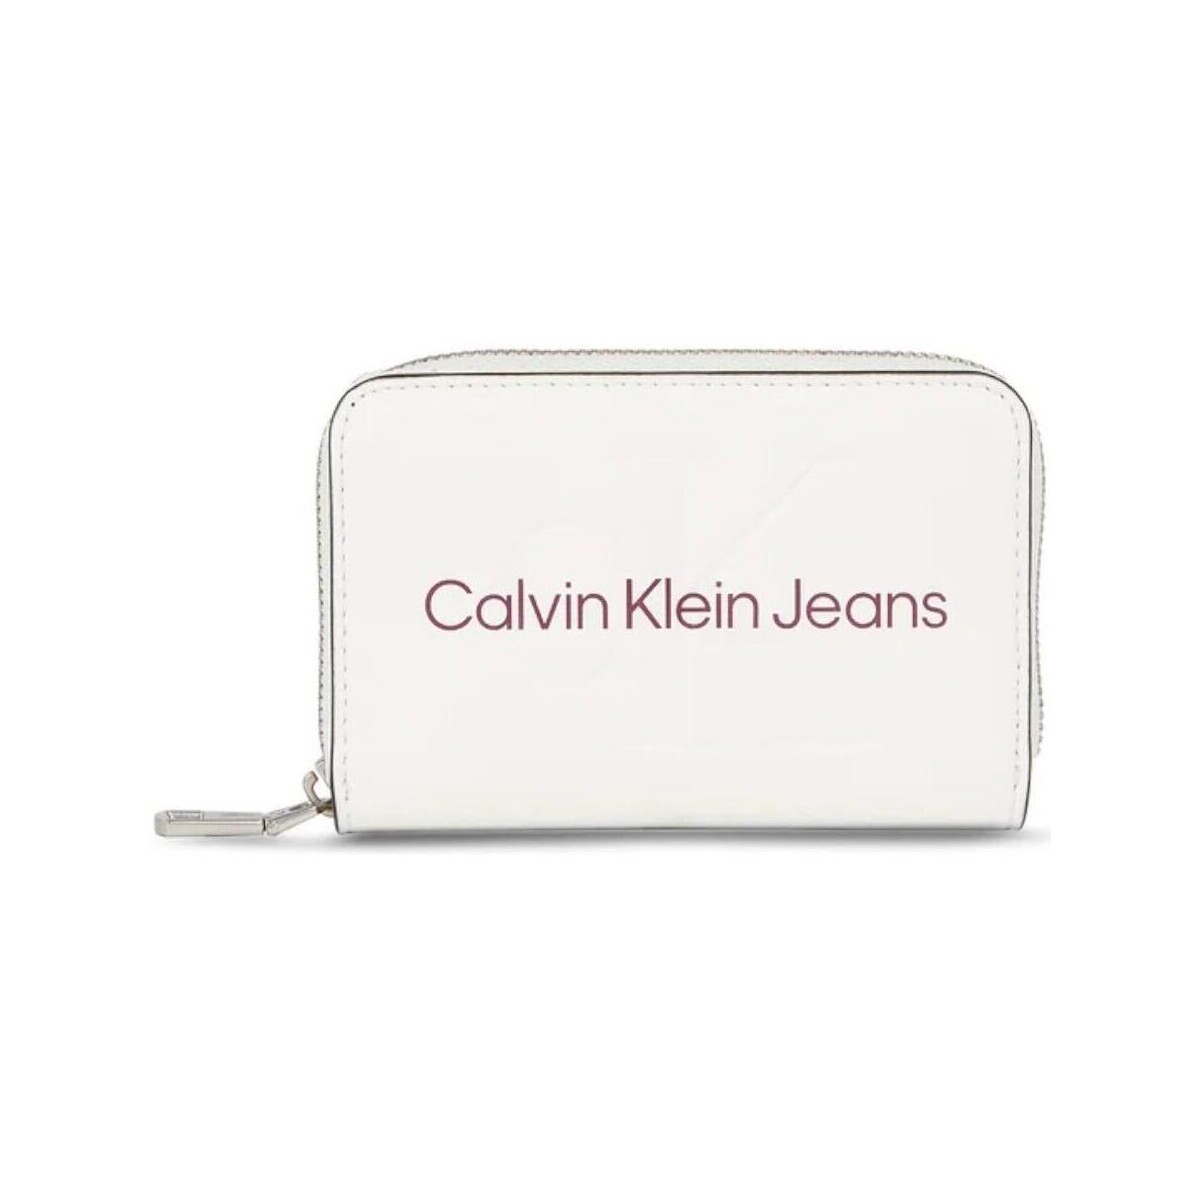 Tassen Dames Tassen   Calvin Klein Jeans  Wit